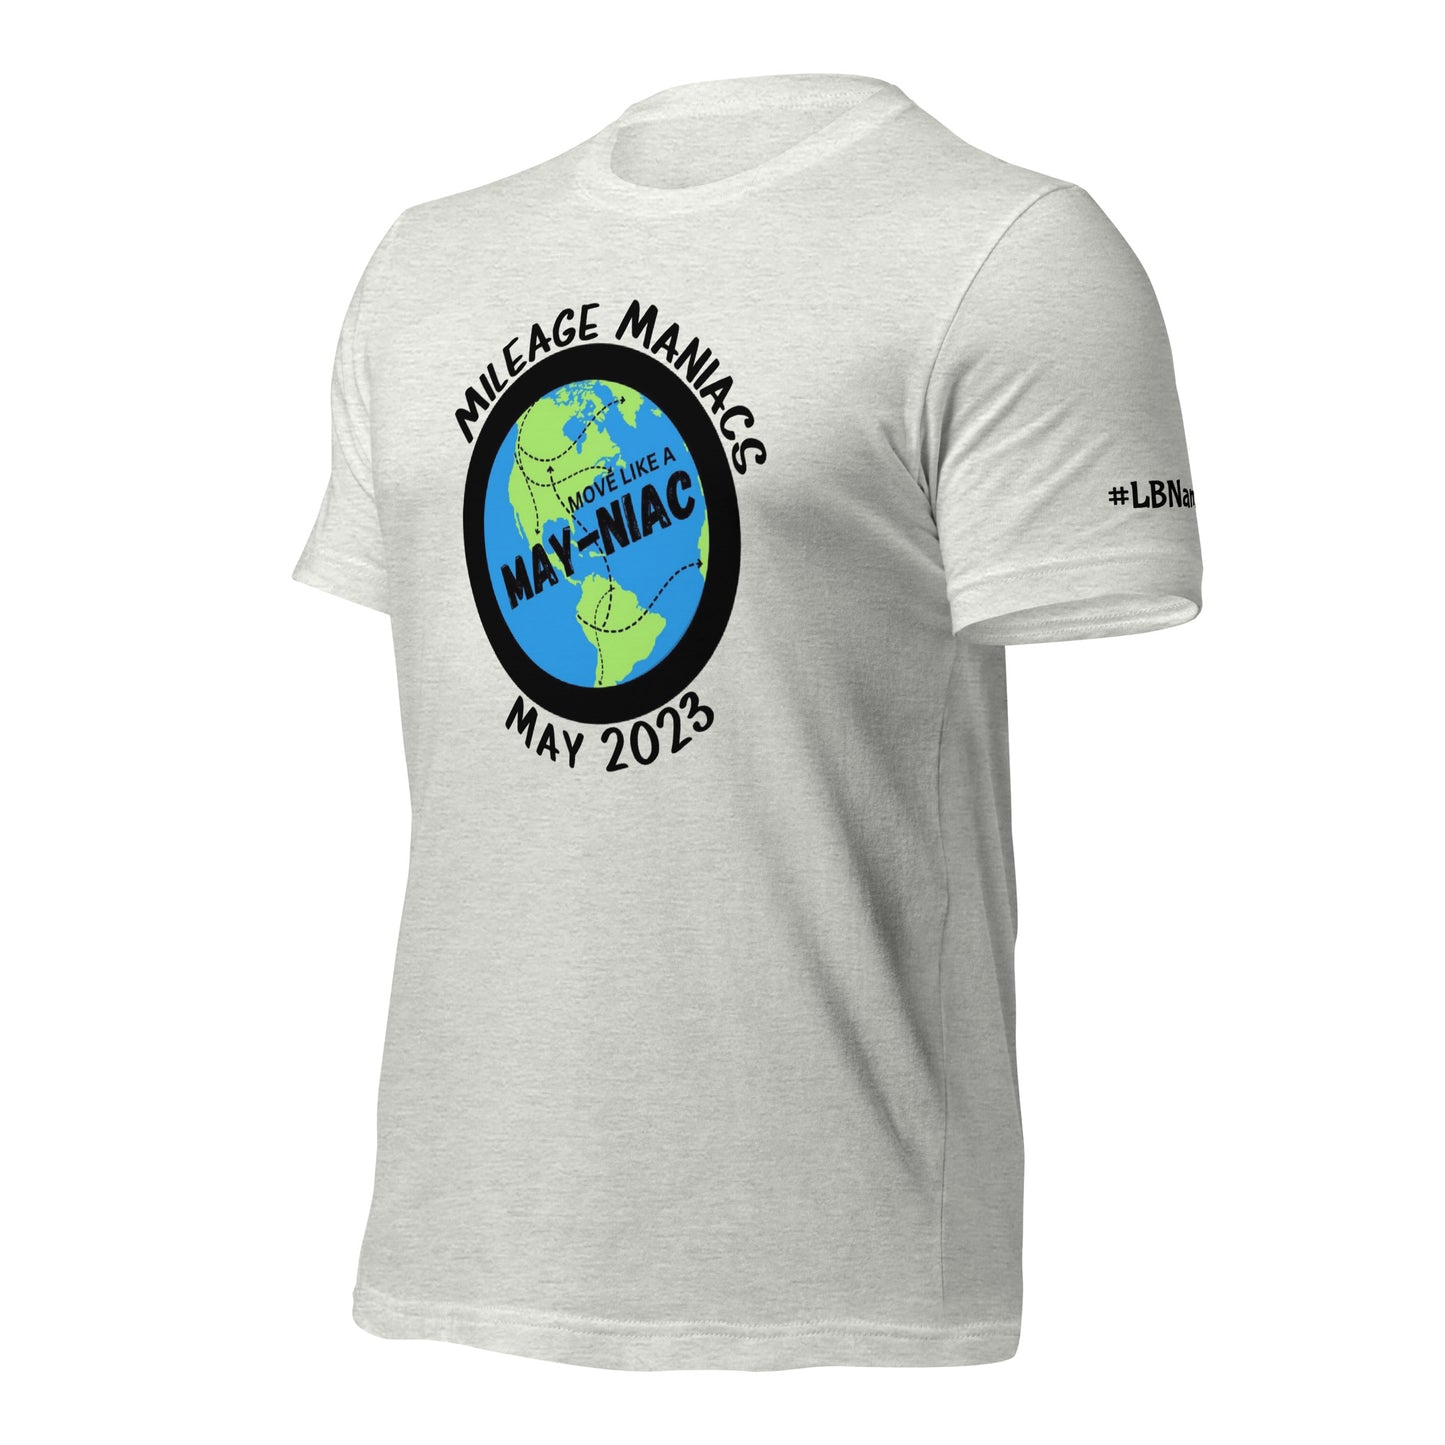 MAY-NIACS - Unisex t-shirt